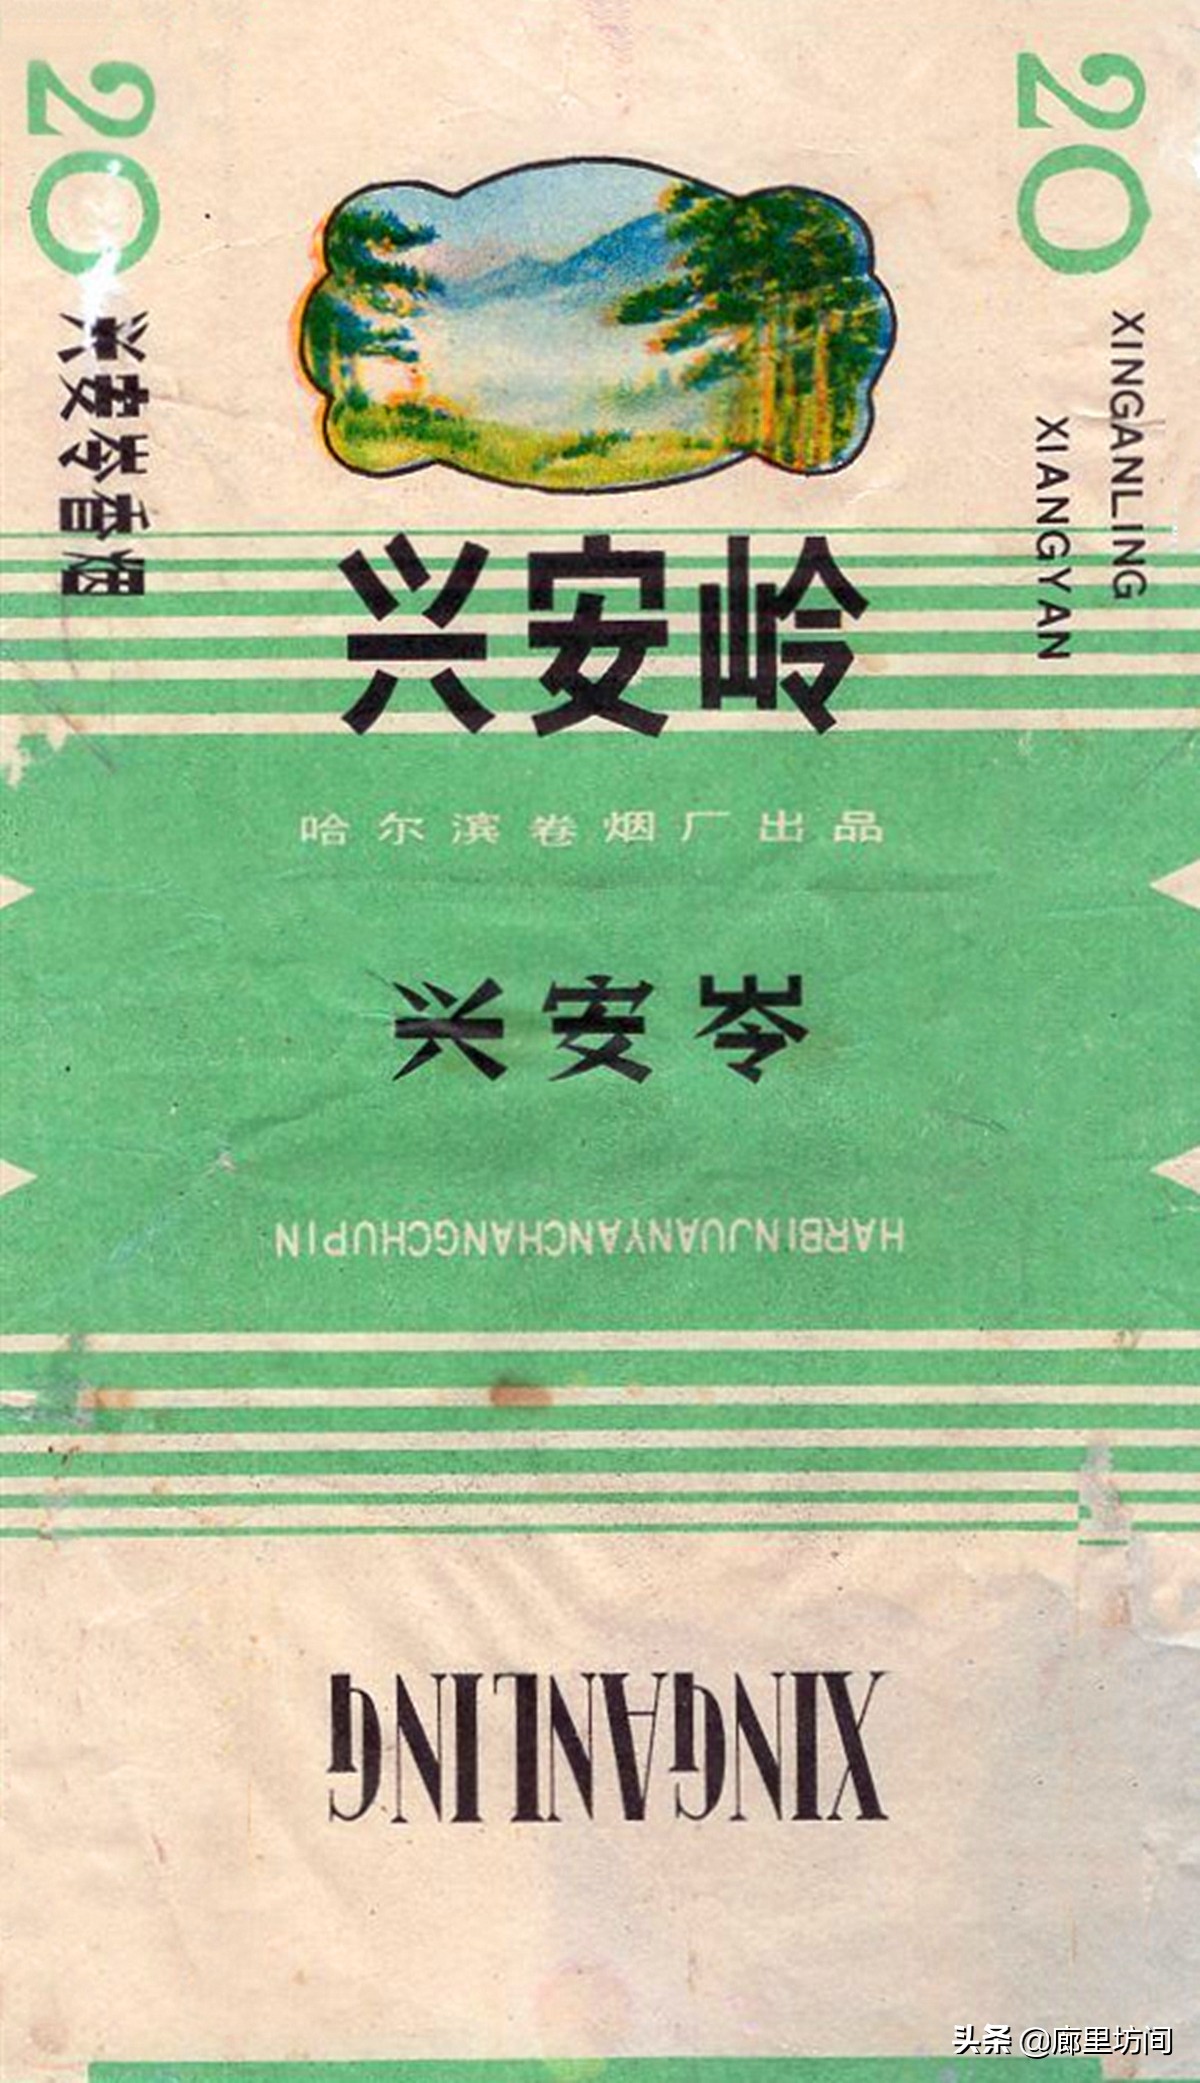 老烟标：1985年前哈尔滨卷烟厂的那些老烟 东北烟民们抽过多少？